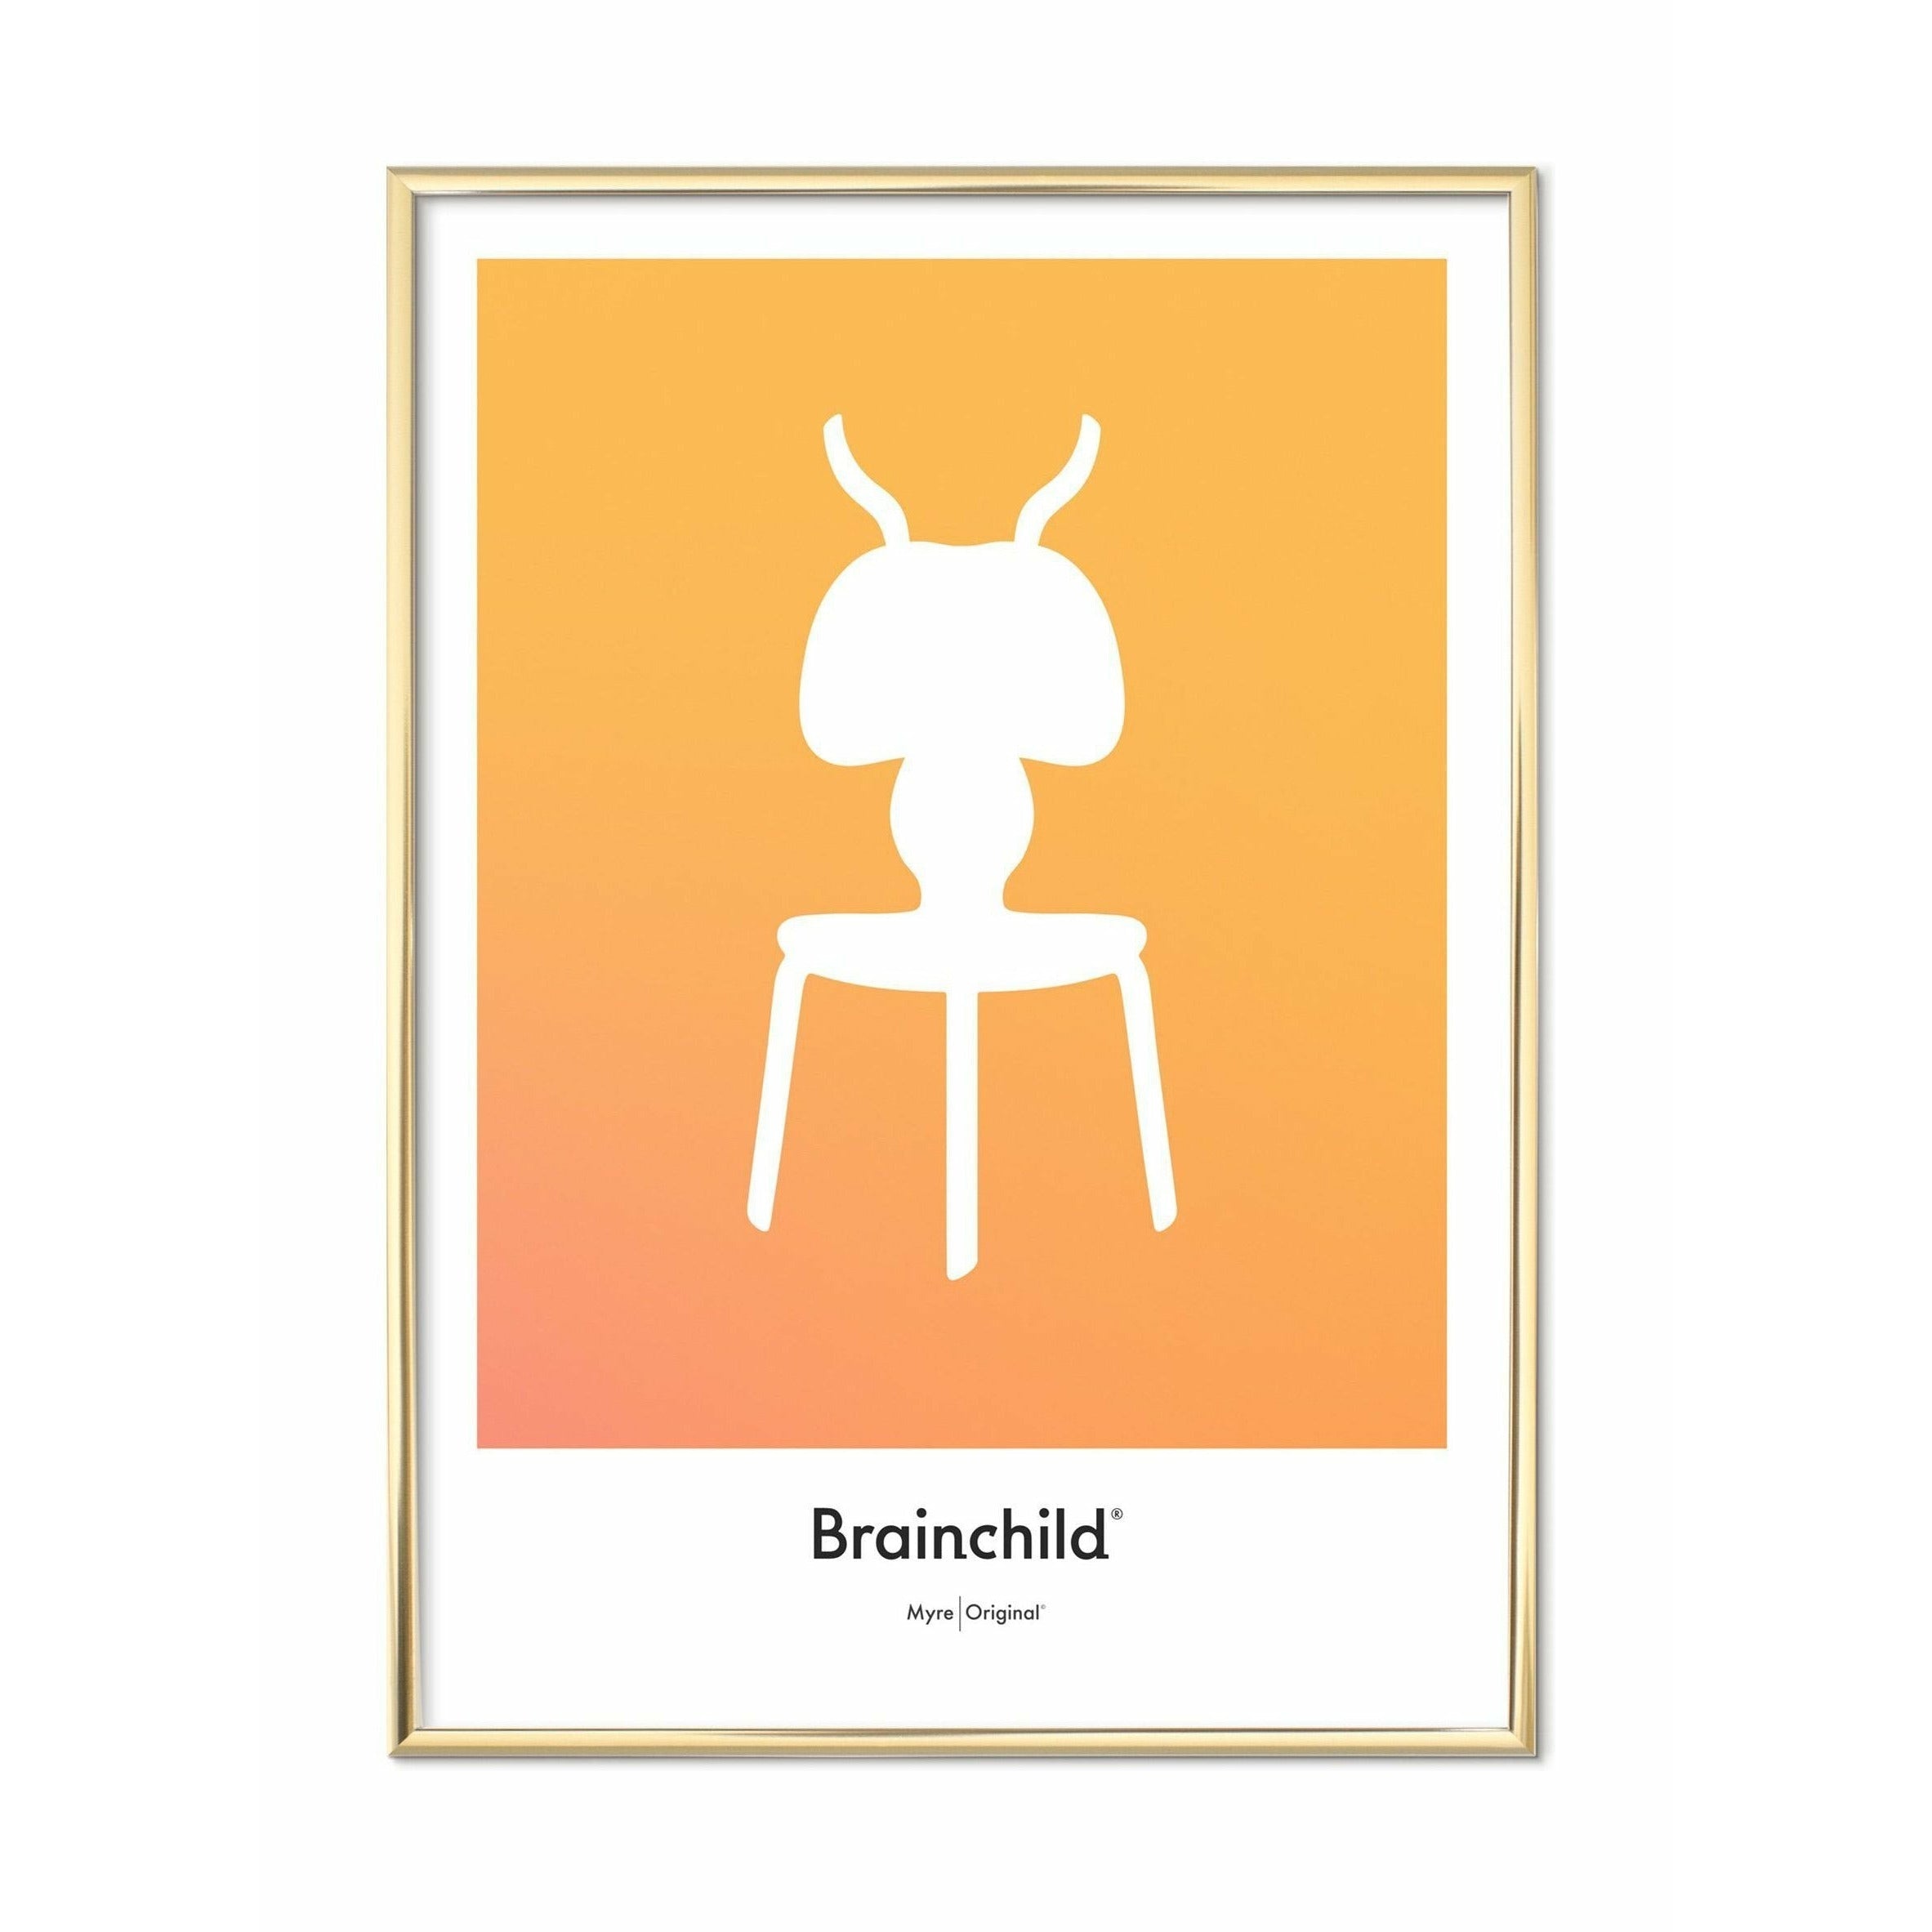 Plakát ikony Brainchild Ant Design, mosazný barevný rám 70 x100 cm, žlutá